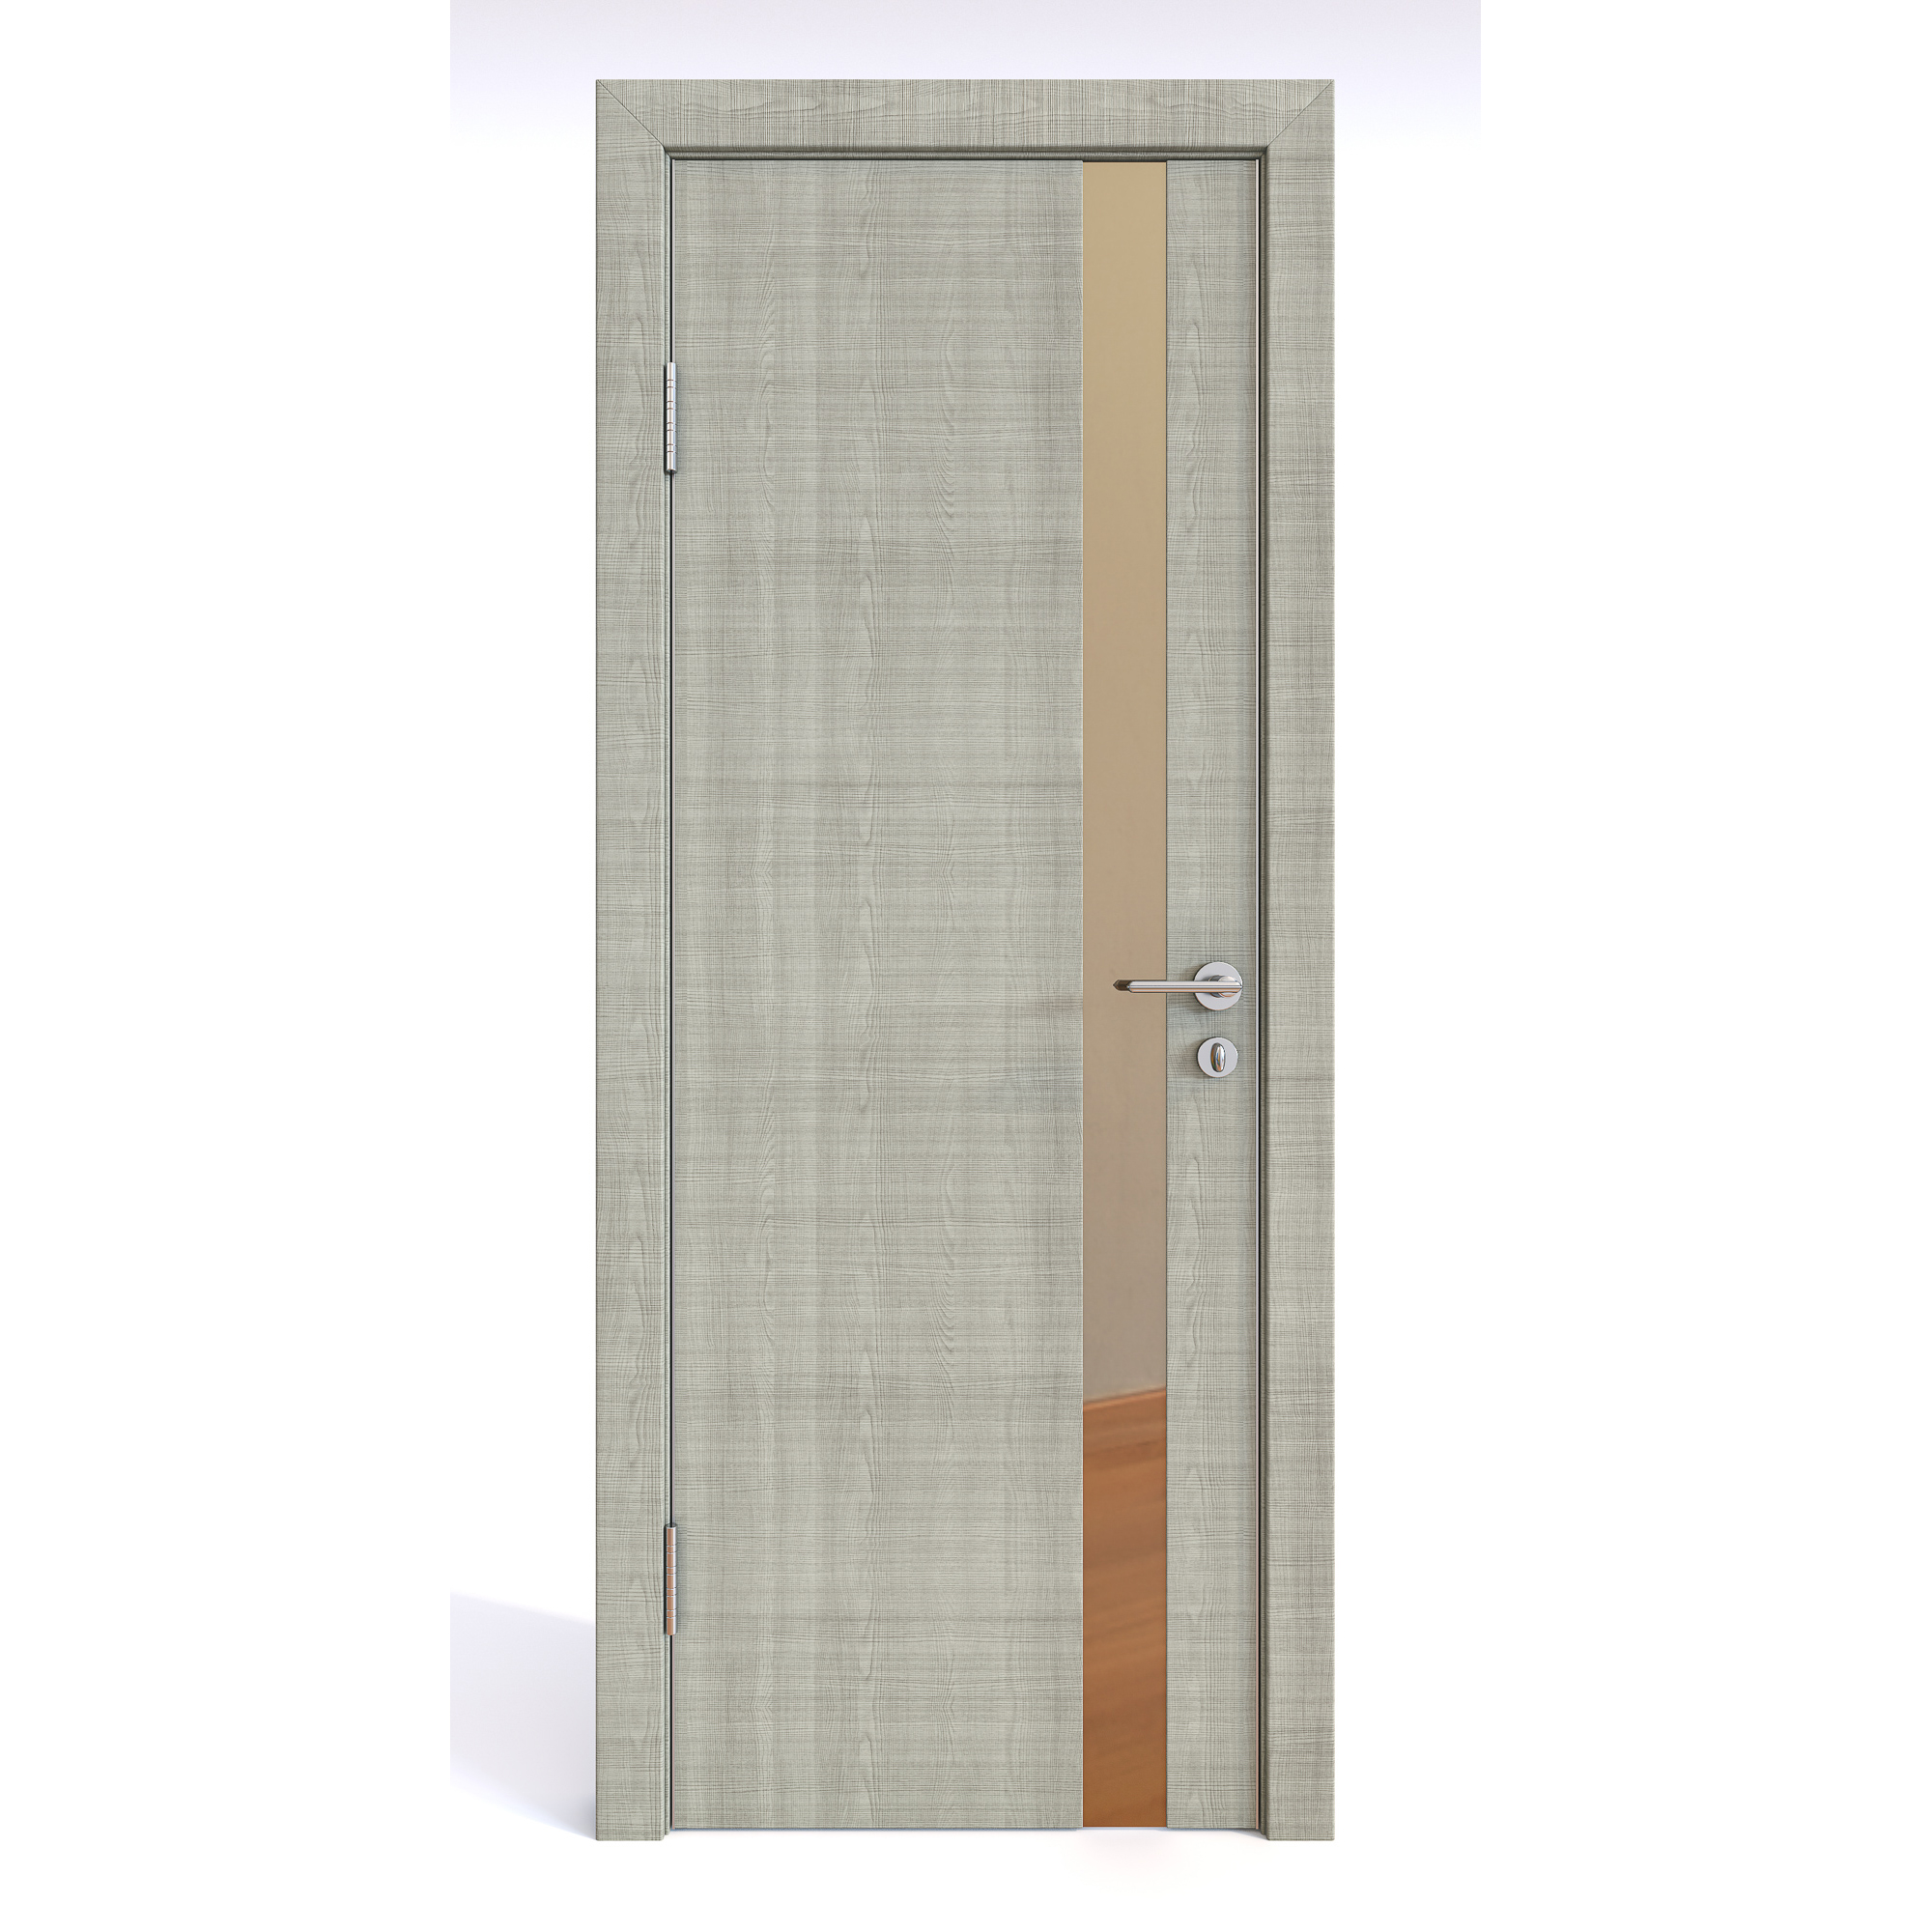 фото Межкомнатная шумоизоляционная дверь до-607 серый дуб/бронза 200х70 дверная линия